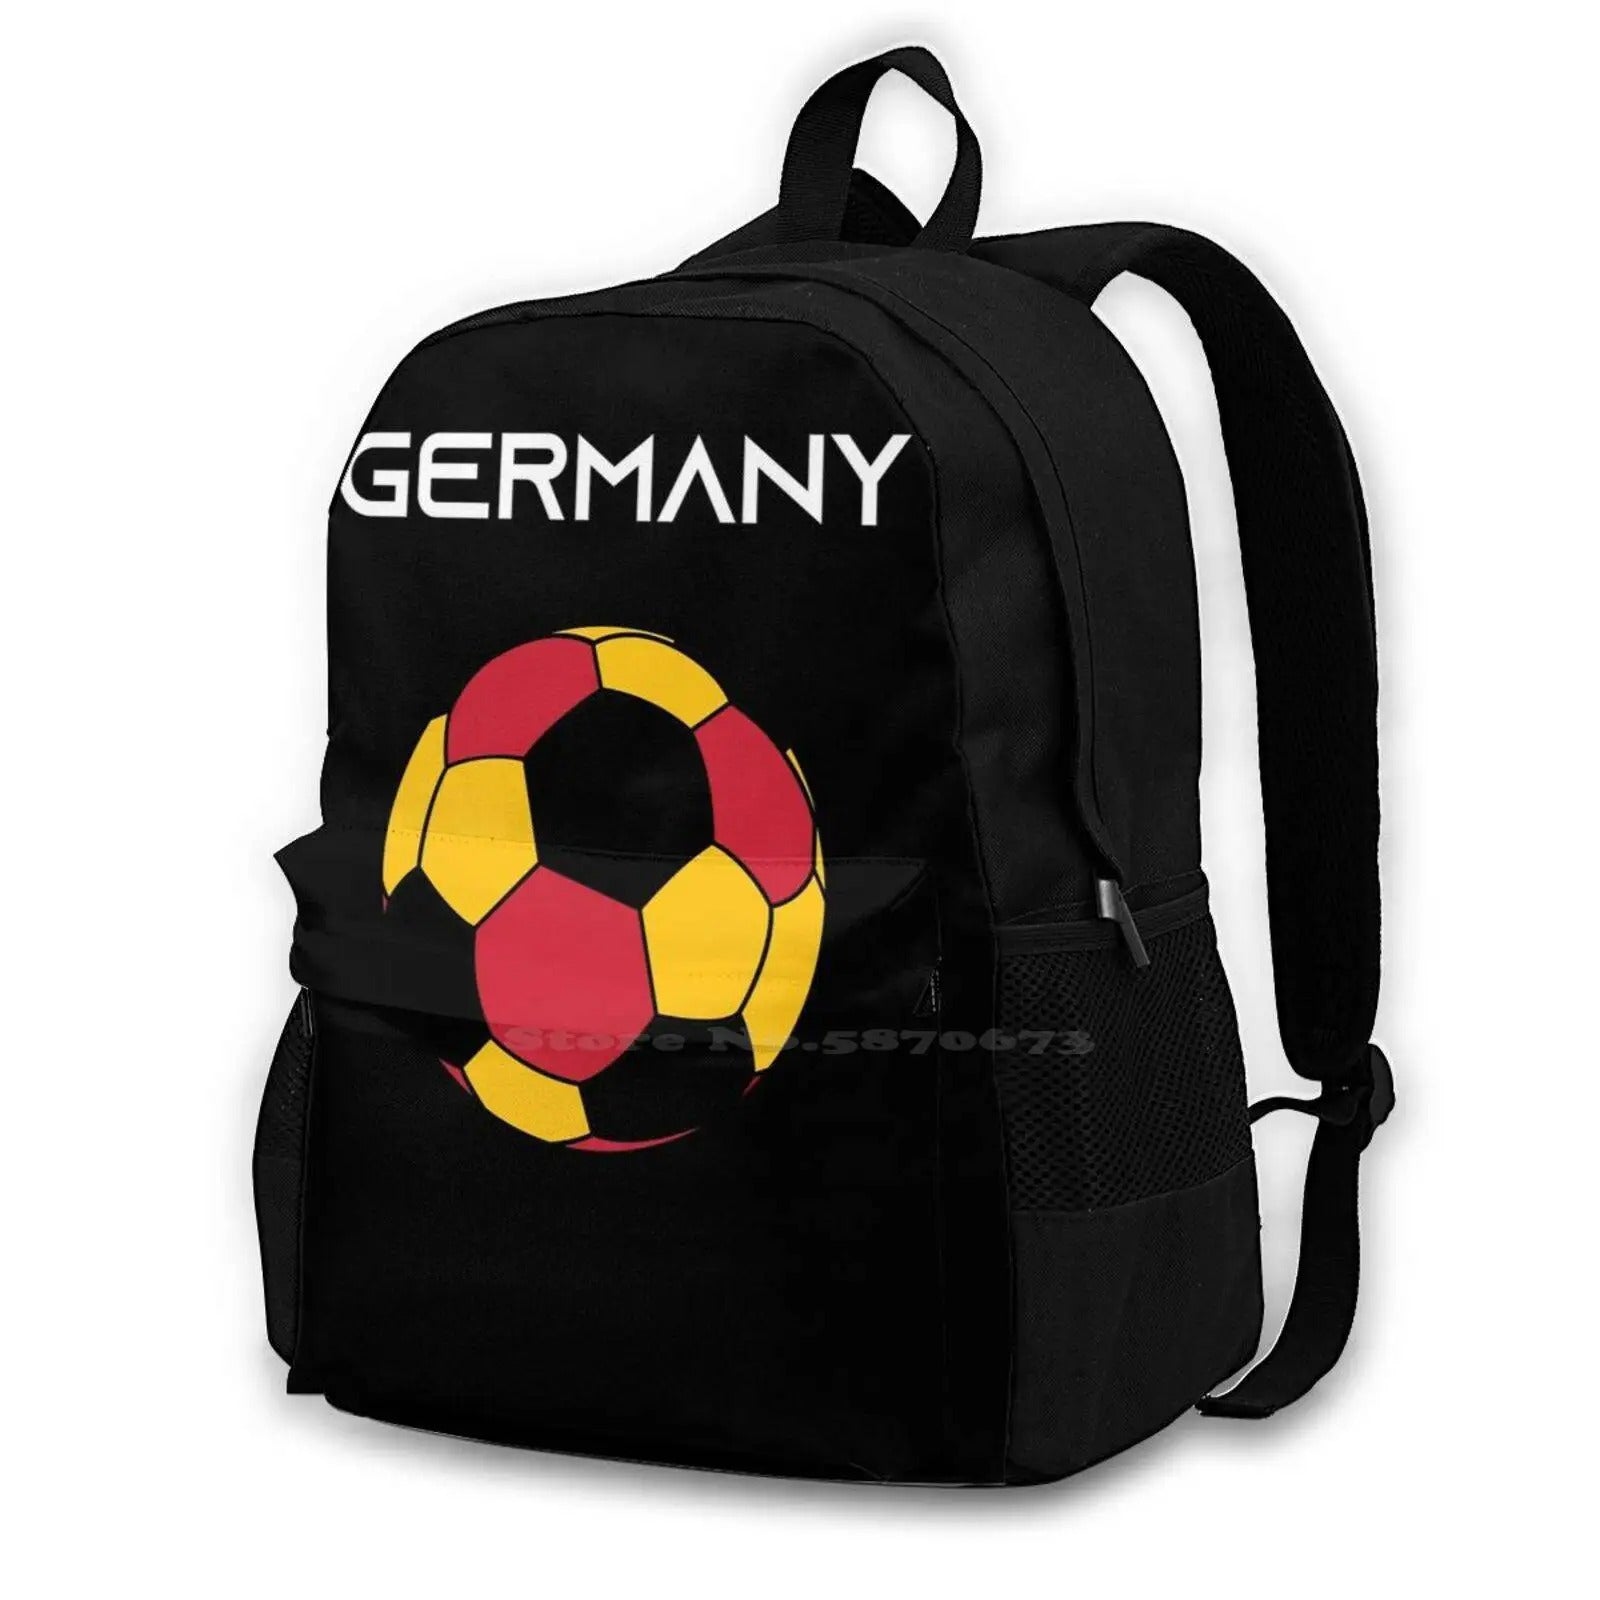 Germany Soccer Backpack - Backpack - Black